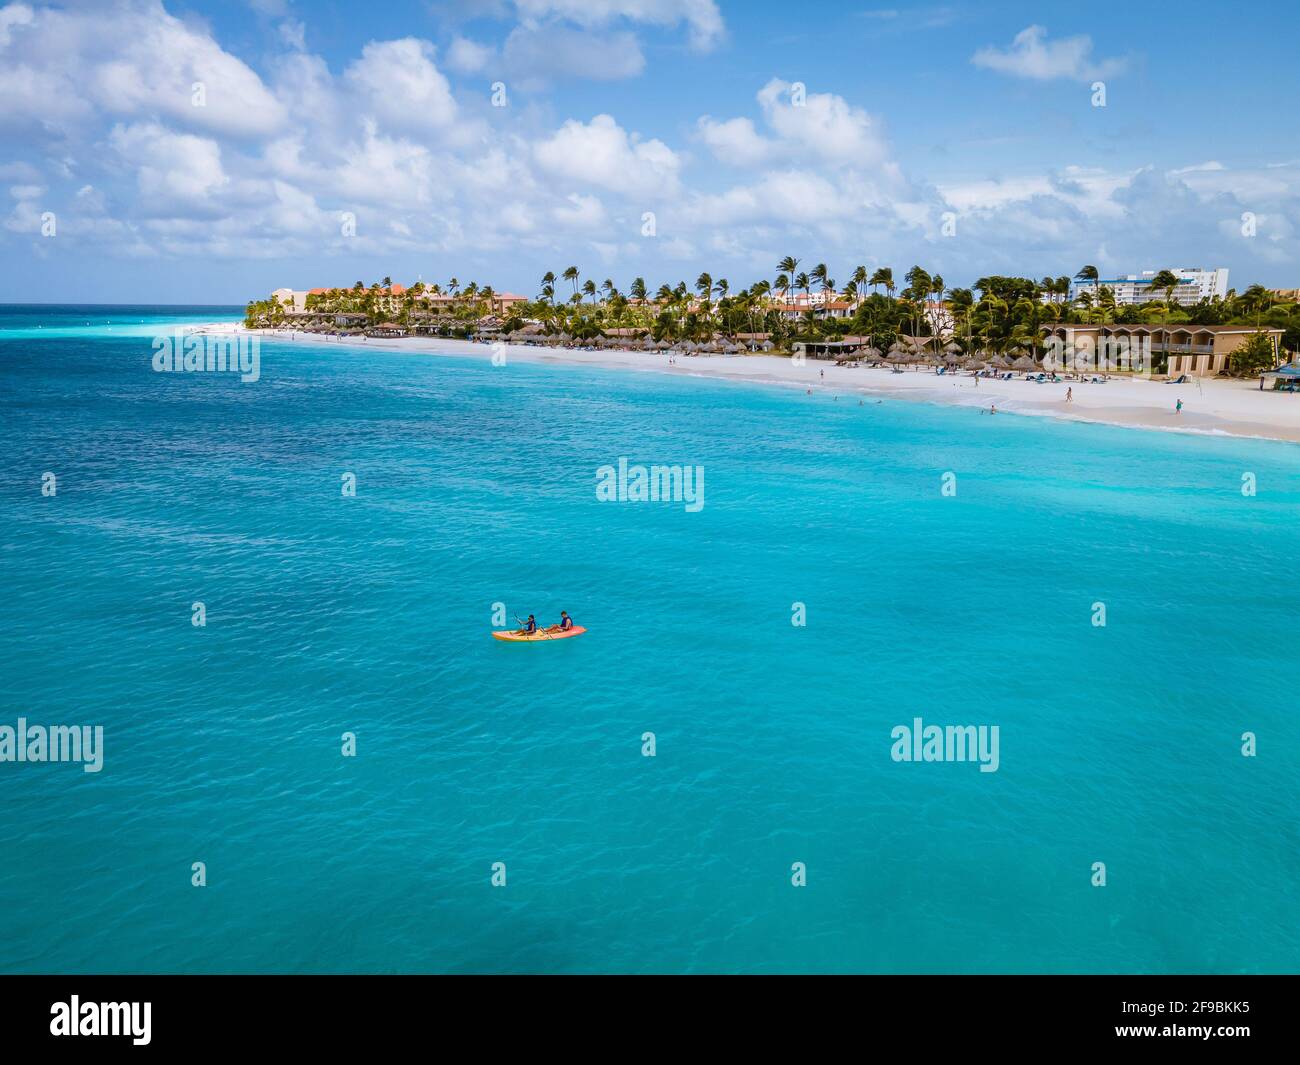 Paar Kajakfahren im Meer auf Urlaub Aruba Karibisches Meer, Mann und Frau mittleren Alters Kajak im Ozean blauen Clrea Wasser weißen Strand und Palmen Aruba Stockfoto